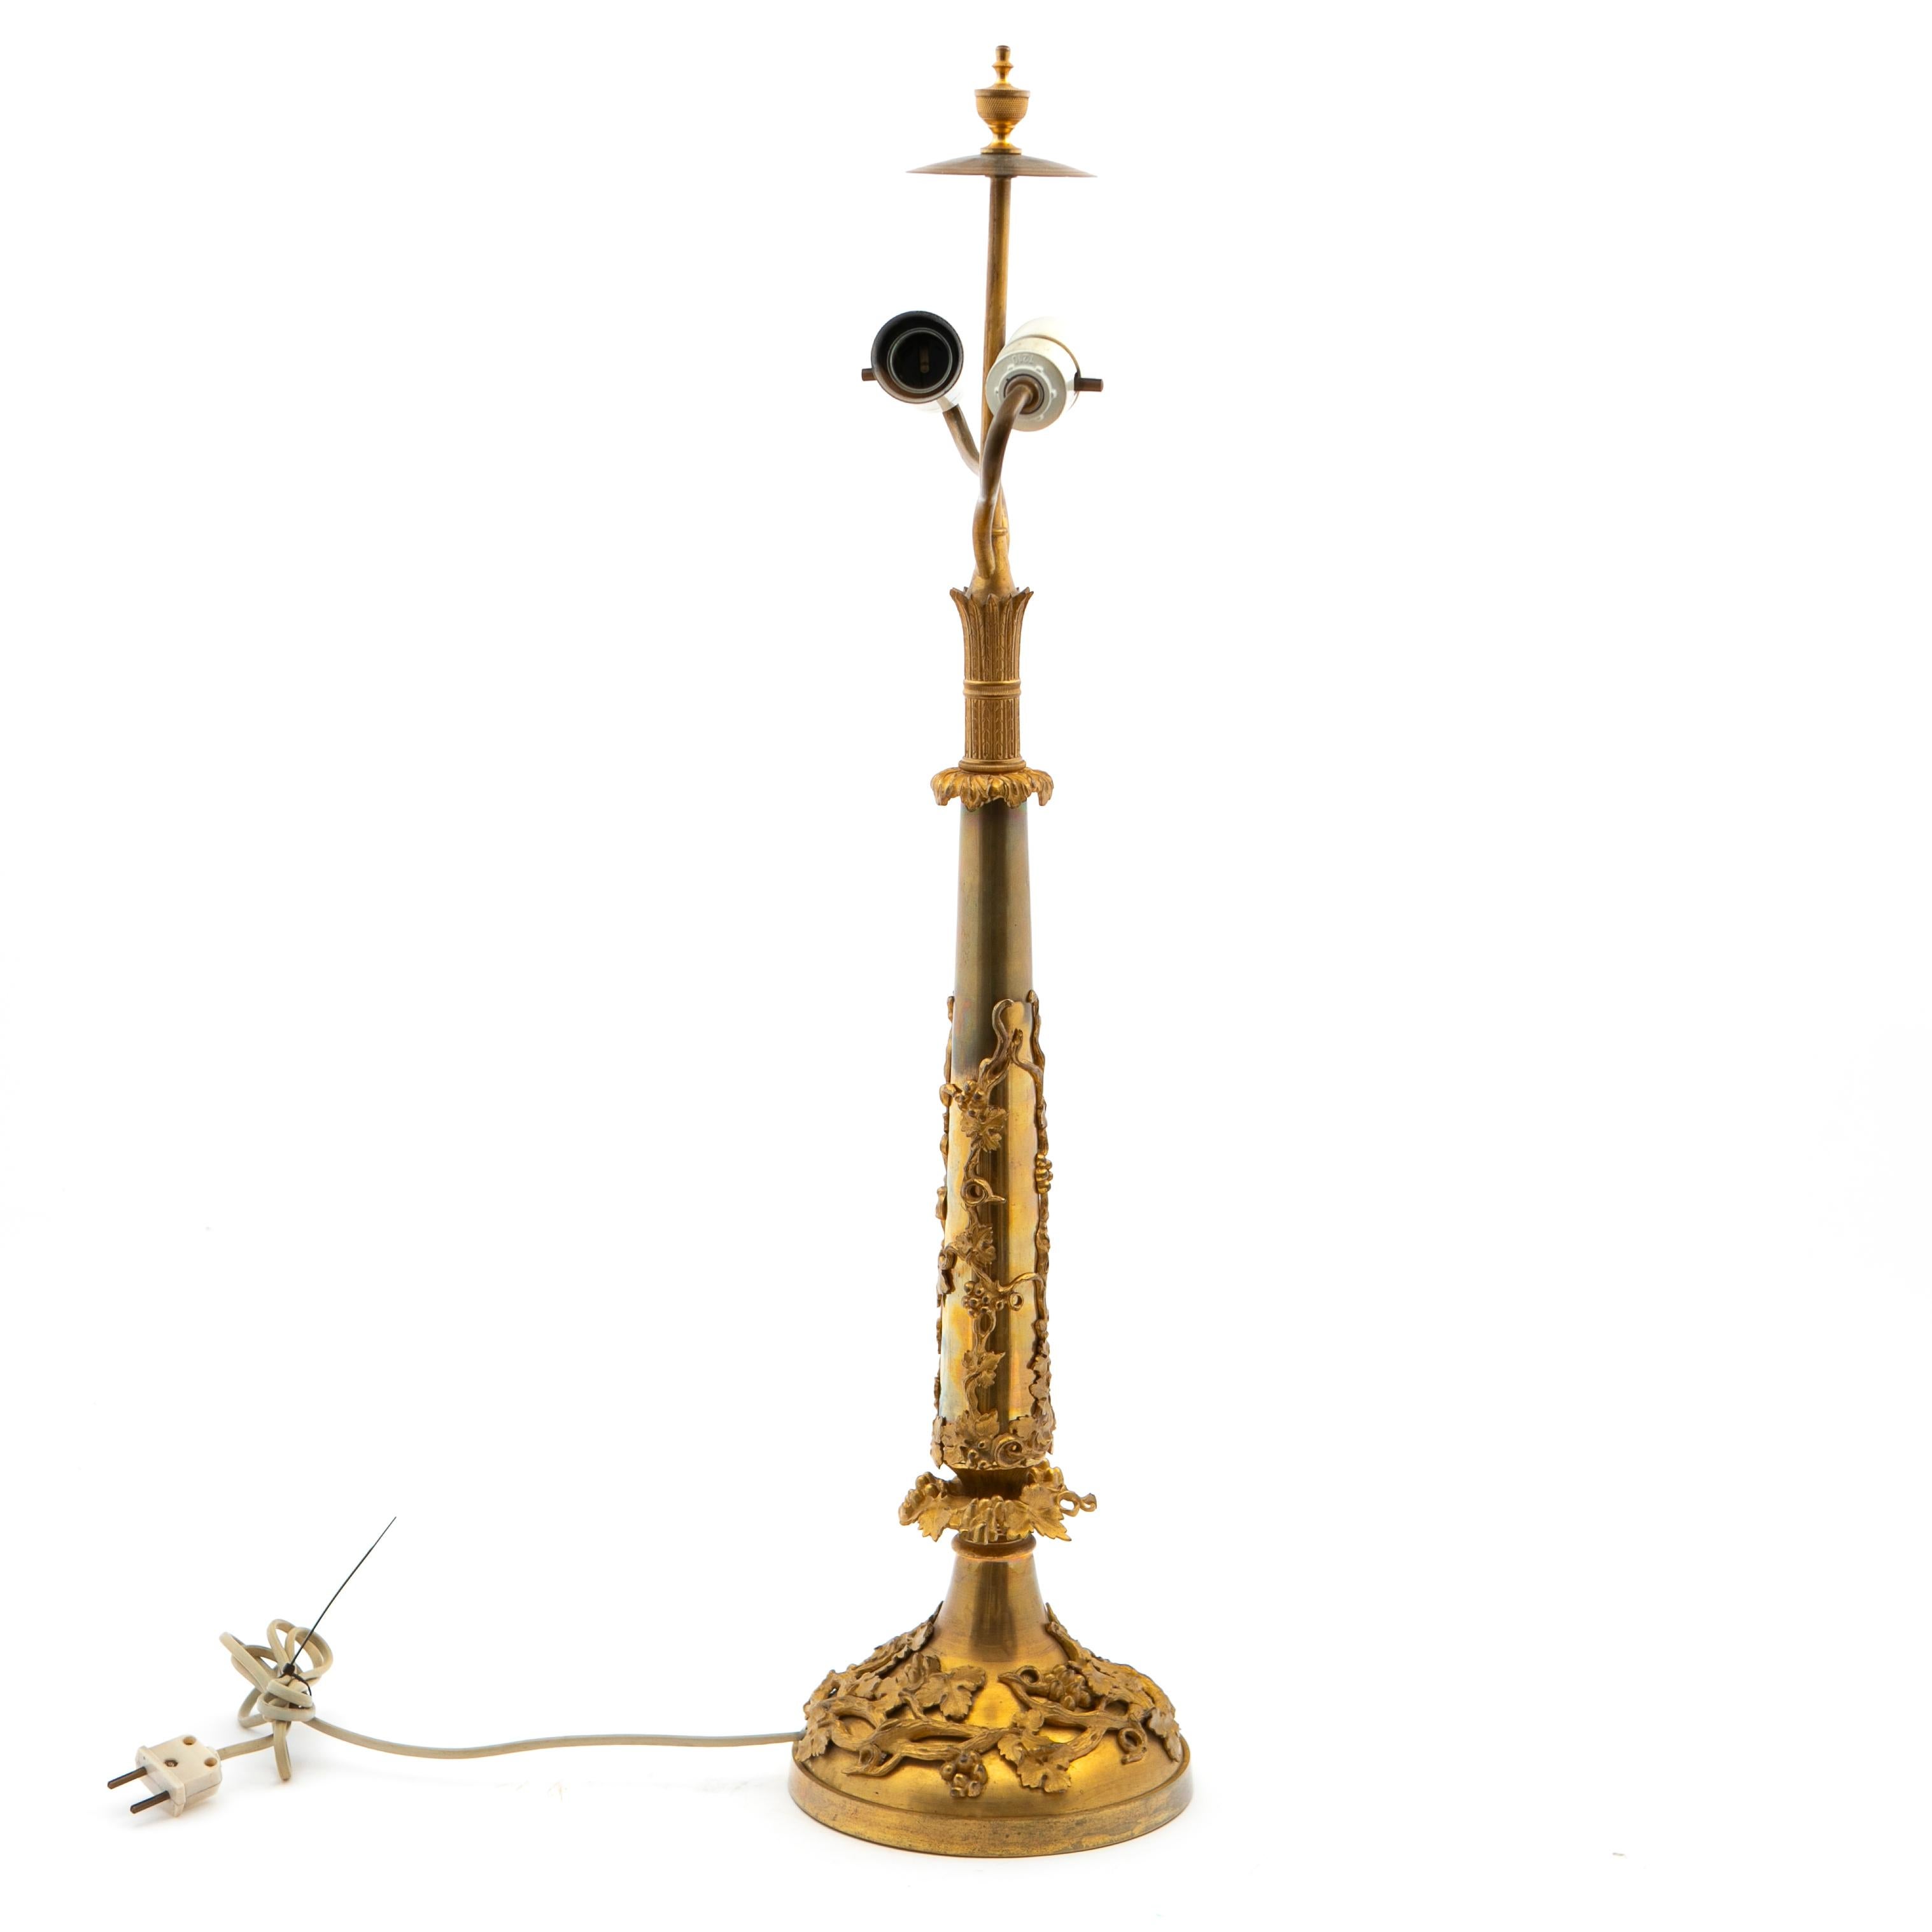 Lampe de table française Napoléon III du XIXe siècle en bronze doré avec deux sources de lumière. Hauteur au sommet : 77 cm.
La base circulaire et le support central conique sont montés avec des raisins et des détails feuillagés en bronze doré. Le